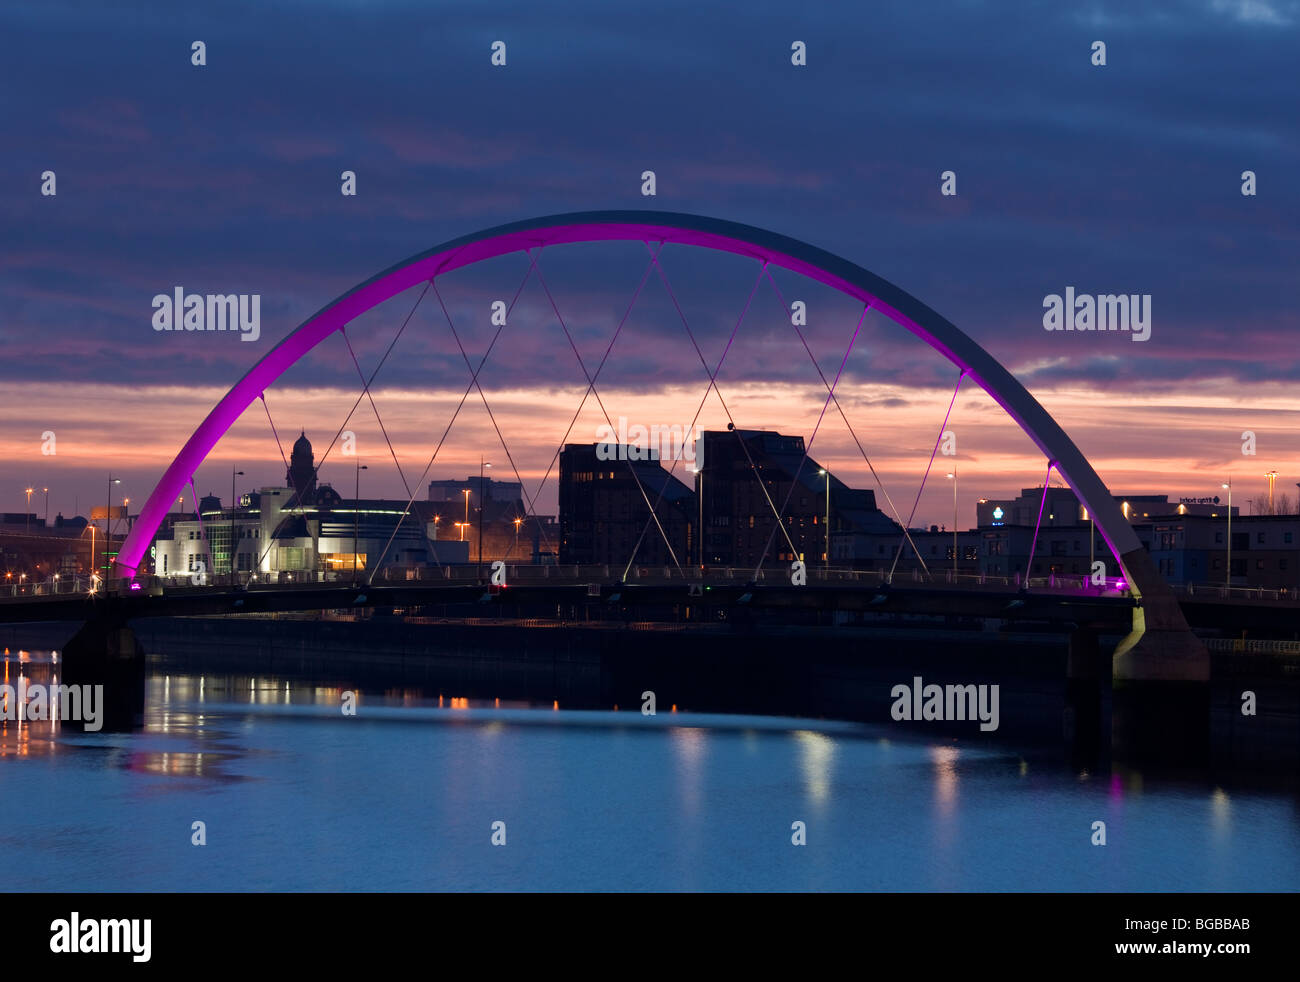 Amanecer en Glasgow a través del puente de curvas Foto de stock